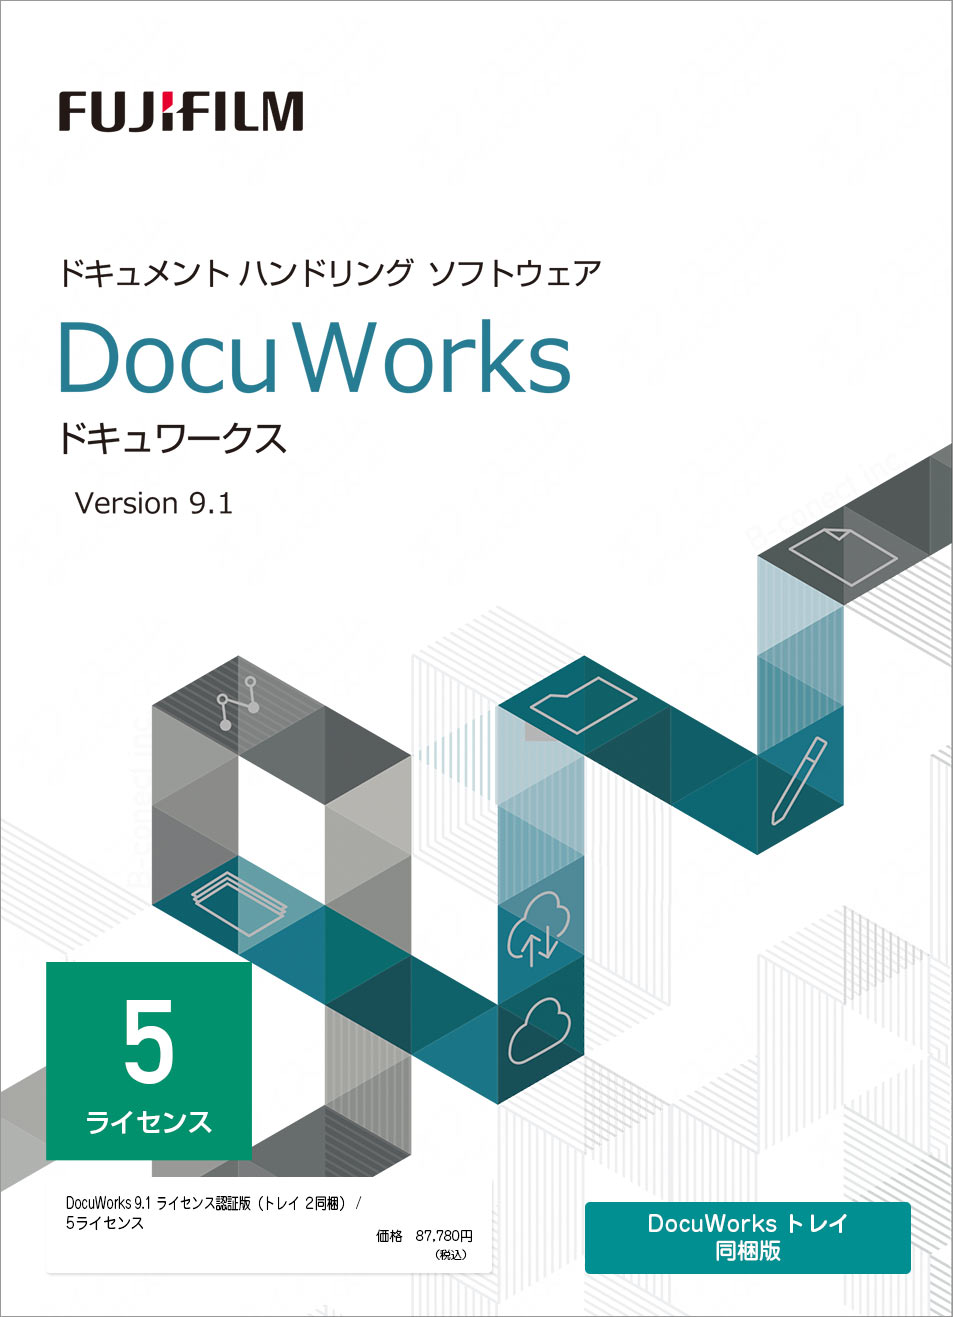 ※詳細スペックは「メーカーサイト」にてご確認下さい。 ● 「DocuWorks　9．1」と「DocuWorks　トレイ　2」がセットになったライセンス認証版／5ライセンス商品です。 ● インストールメディア（DVD－ROM）は含まれていません。 「富士フイルムビジネスイノベーションダイレクト」から無料提供する体験版ソフトウェアまたはディスクイメージ（ISOファイル）をご利用いただくか、別途インストールメディア（ライセンス認証版）が必要です。 【商品構成】 ● 「DocuWorks　9．1」ライセンス証書：1部 ● 「DocuWorks　9．1」のご案内：1部 ● 「DocuWorks　トレイ　2」ライセンス証書1部 ● 「DocuWorks　トレイ　2」のご案内：1部 ● 「DocuWorksヘルプデスクがより便利に！のご案内」：1部 ● 商品についての概要や商品についての概要や動作環境等は下記「参考情報ページ（1）」、「参考情報ページ（2）」（富士フイルムビジネスイノベーション公式ホームページ）DocuWorks　9．1（ドキュワークス9．1）にてご確認ください。　[関連商品]DocuWorks 9、SDWL428A